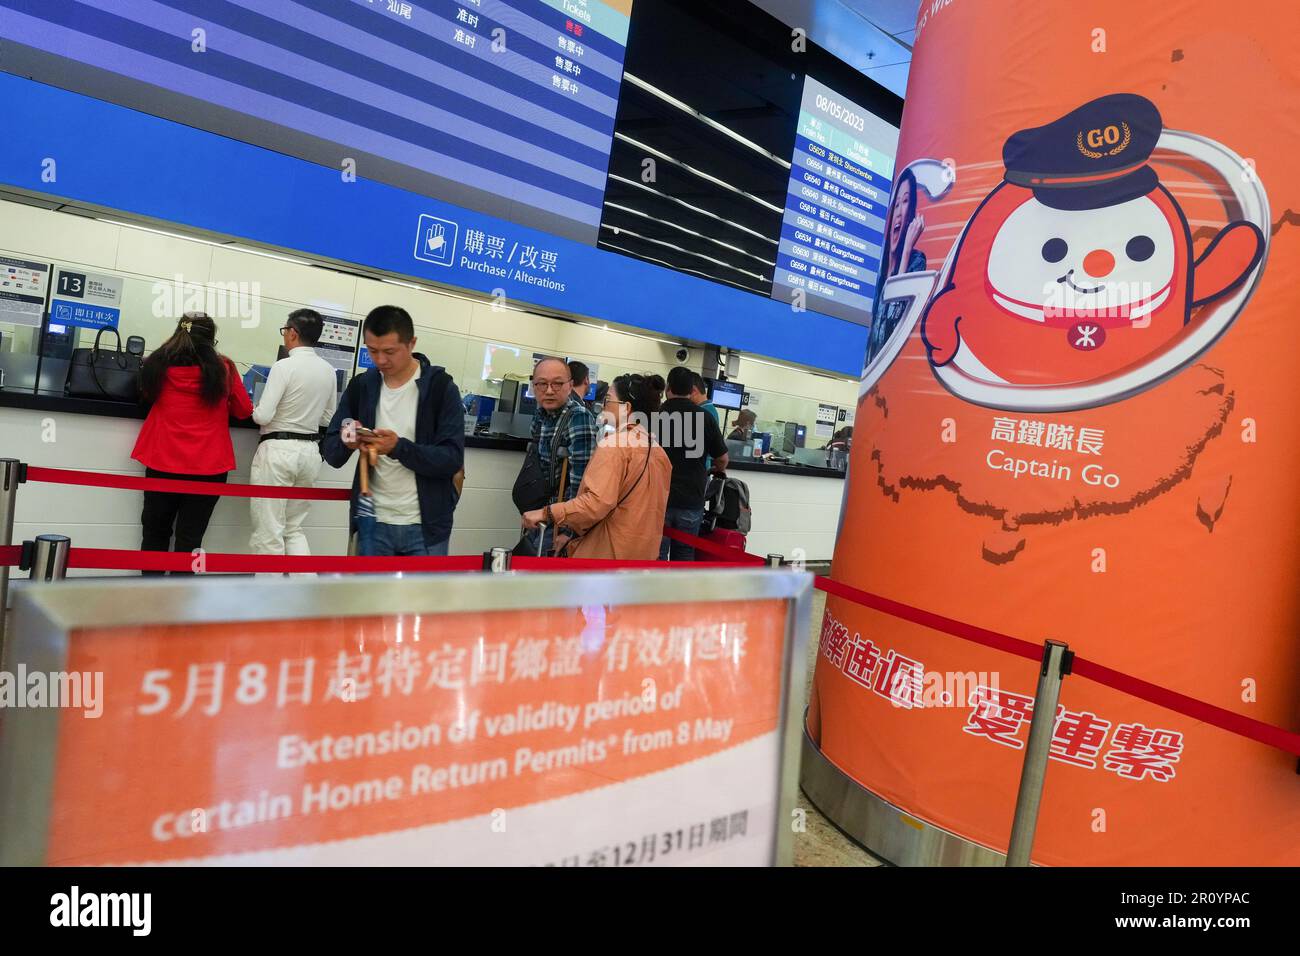 Des comptoirs sont mis en place pour les passagers qui utilisent leur permis de retour à domicile expiré pour acheter des billets de train à grande vitesse à la gare de Hong Kong West Kowloon. 08MAY23 SCMP / Sam Tsang Banque D'Images